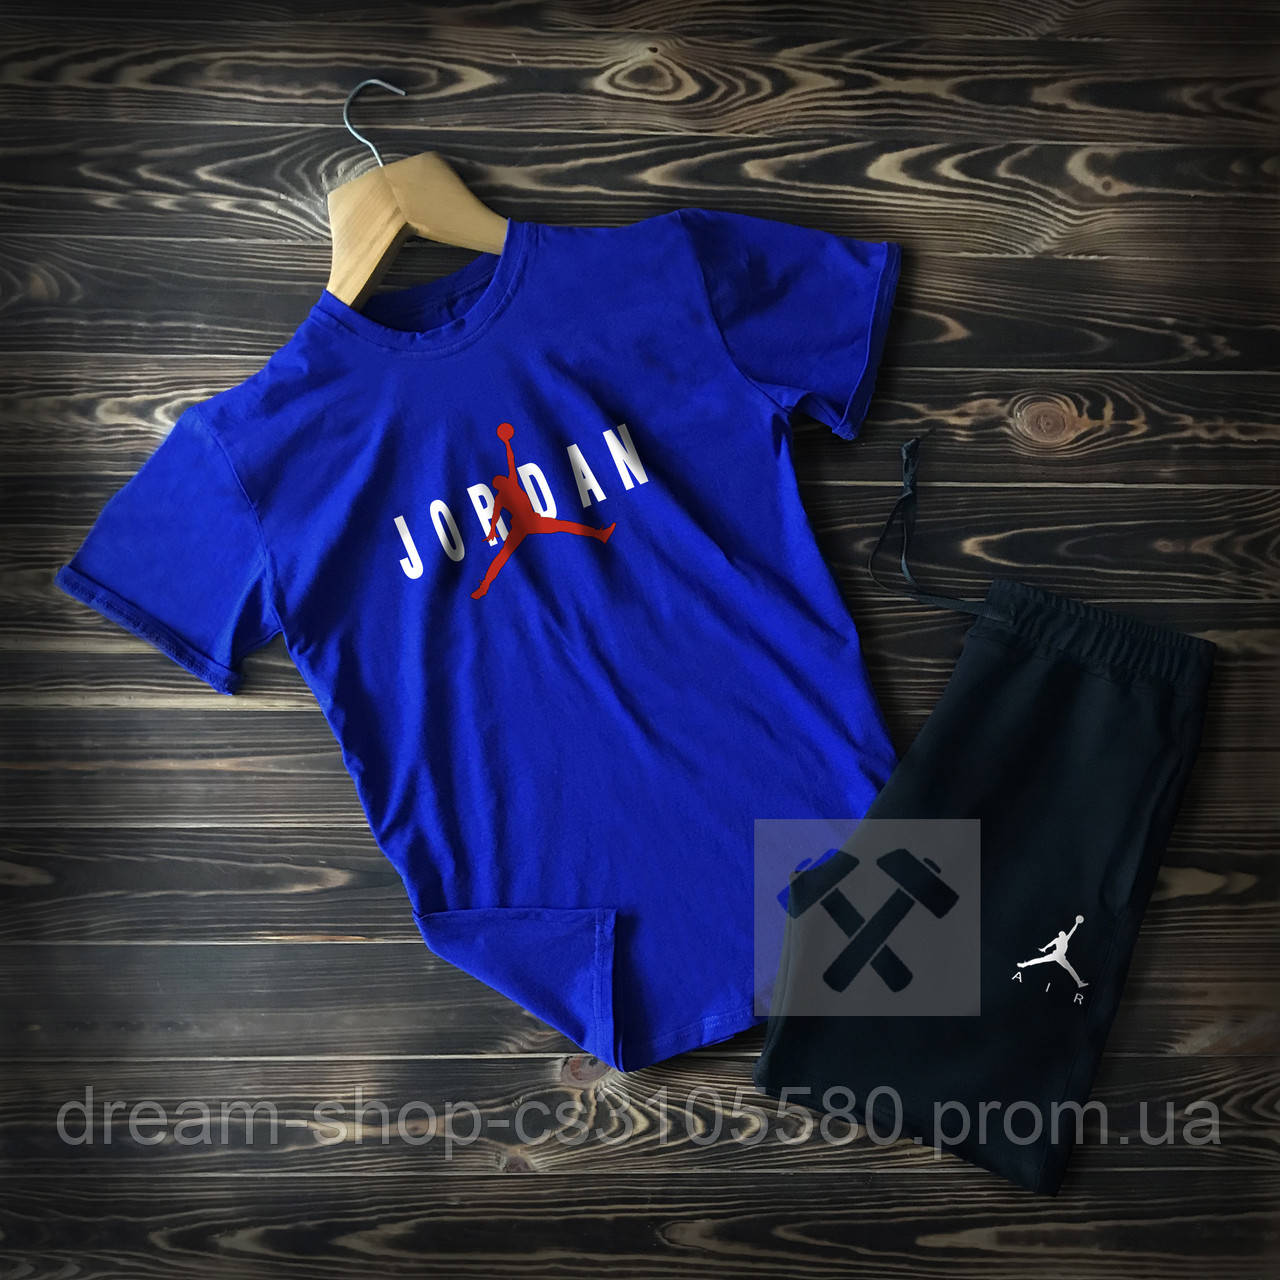 Мужская футболка и шорты Джордан (Jordan), Турцицкий хлопок